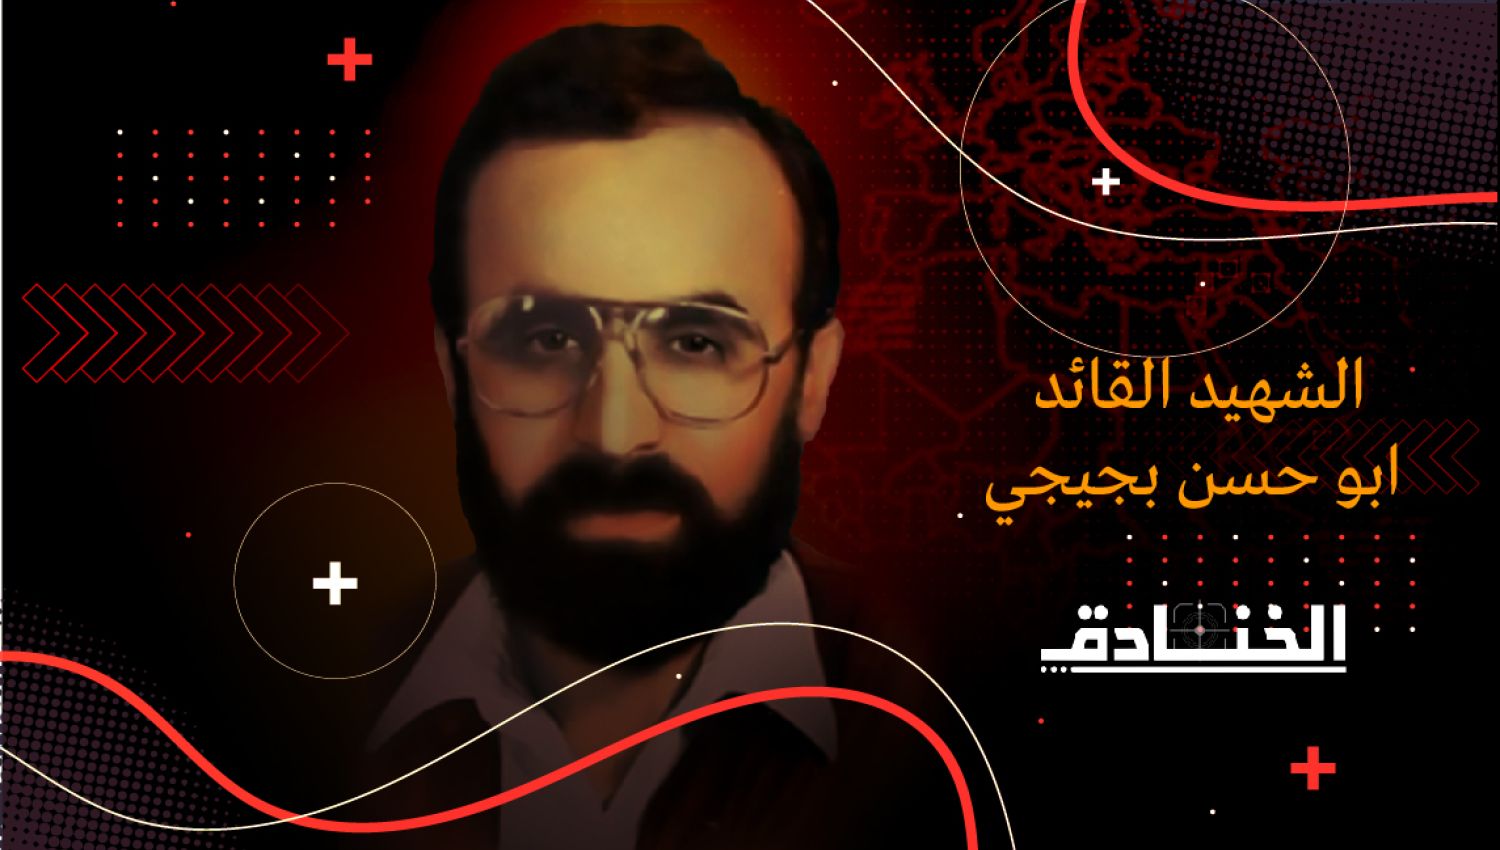 في عيد المعلّم، أبو حسن بجيجي، أستاذ المقاومة